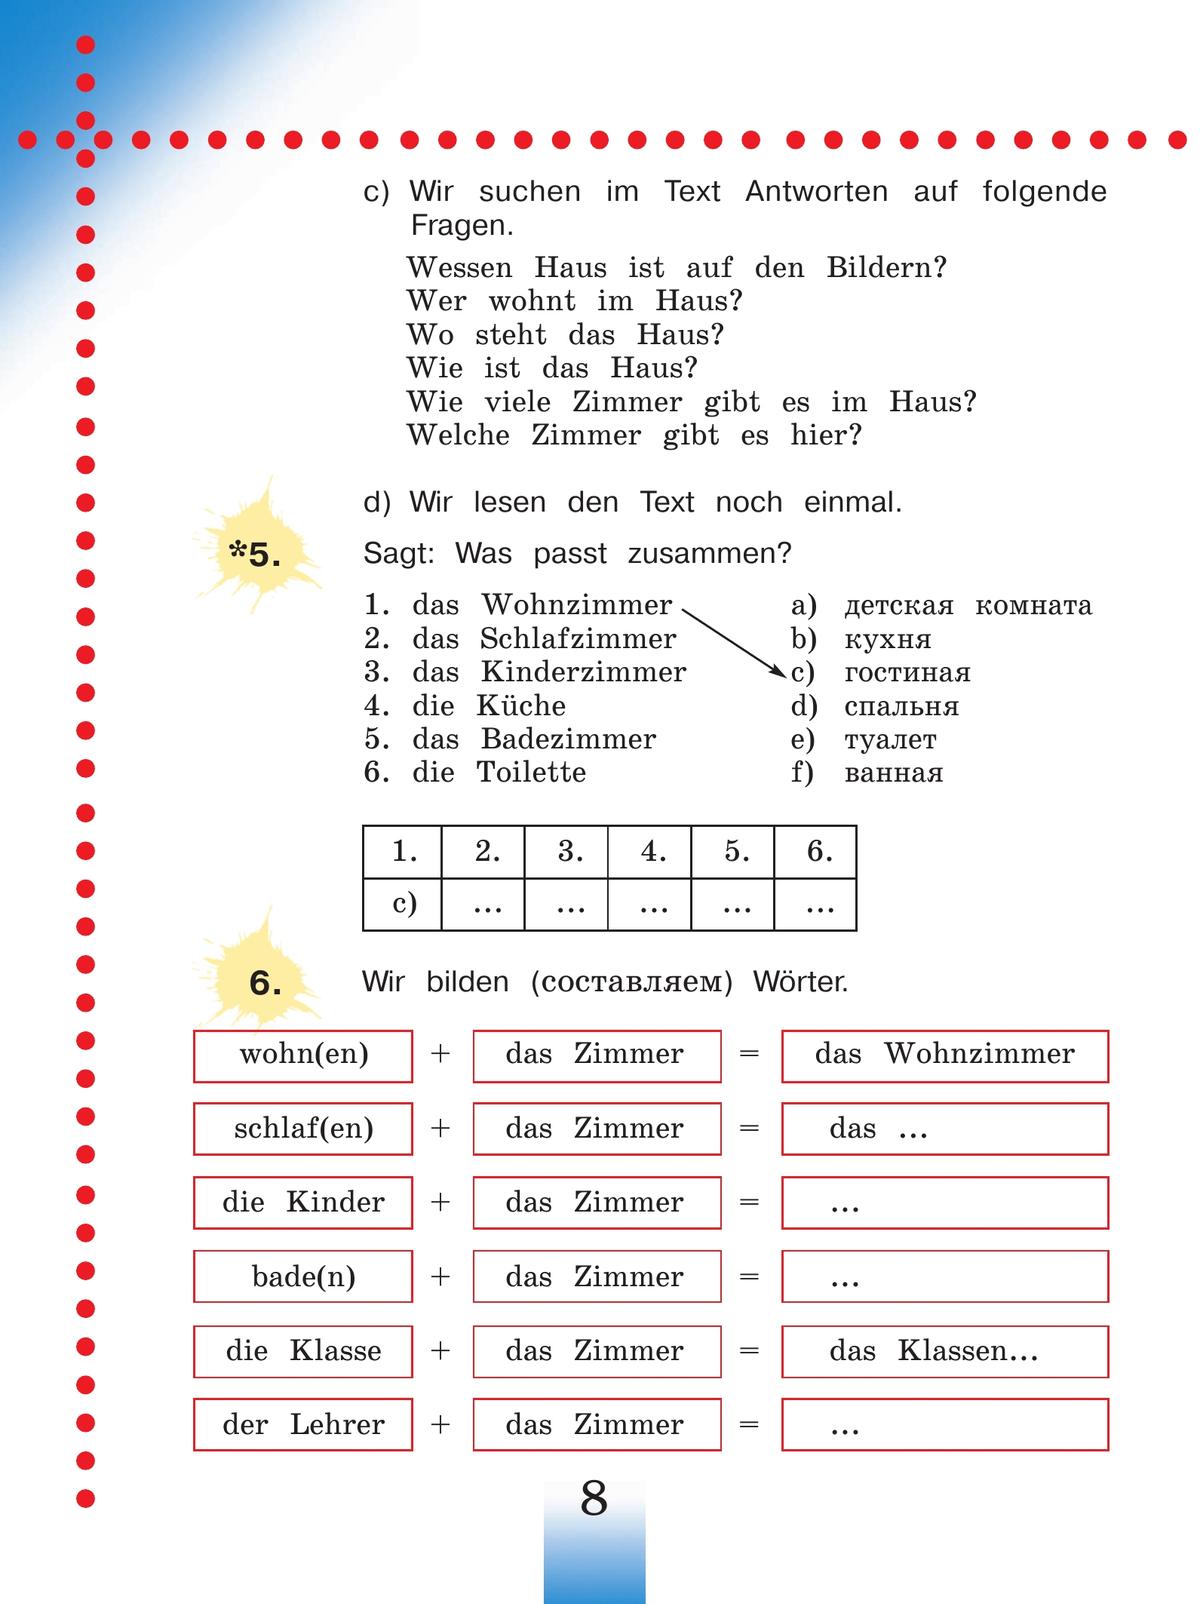 Немецкий язык. 4 класс. Учебник. В 2 ч. Часть 2 11